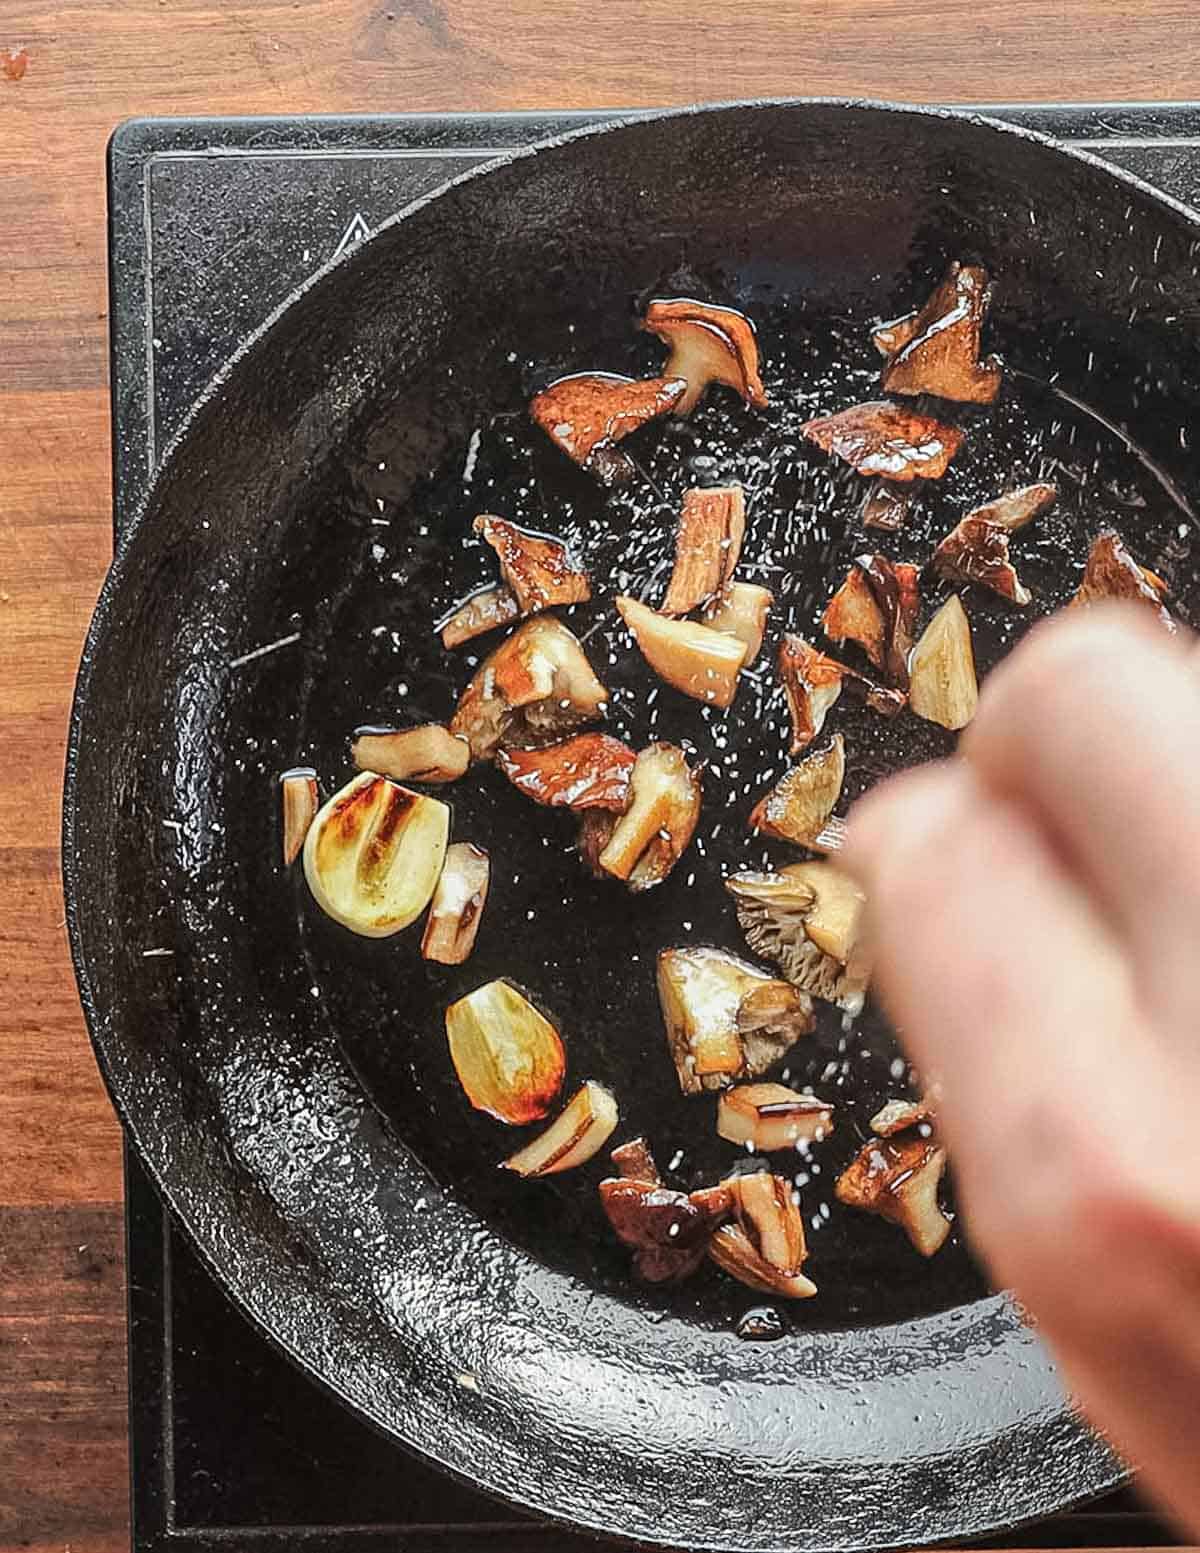 Adding salt to a pan of sauteed mushrooms. 